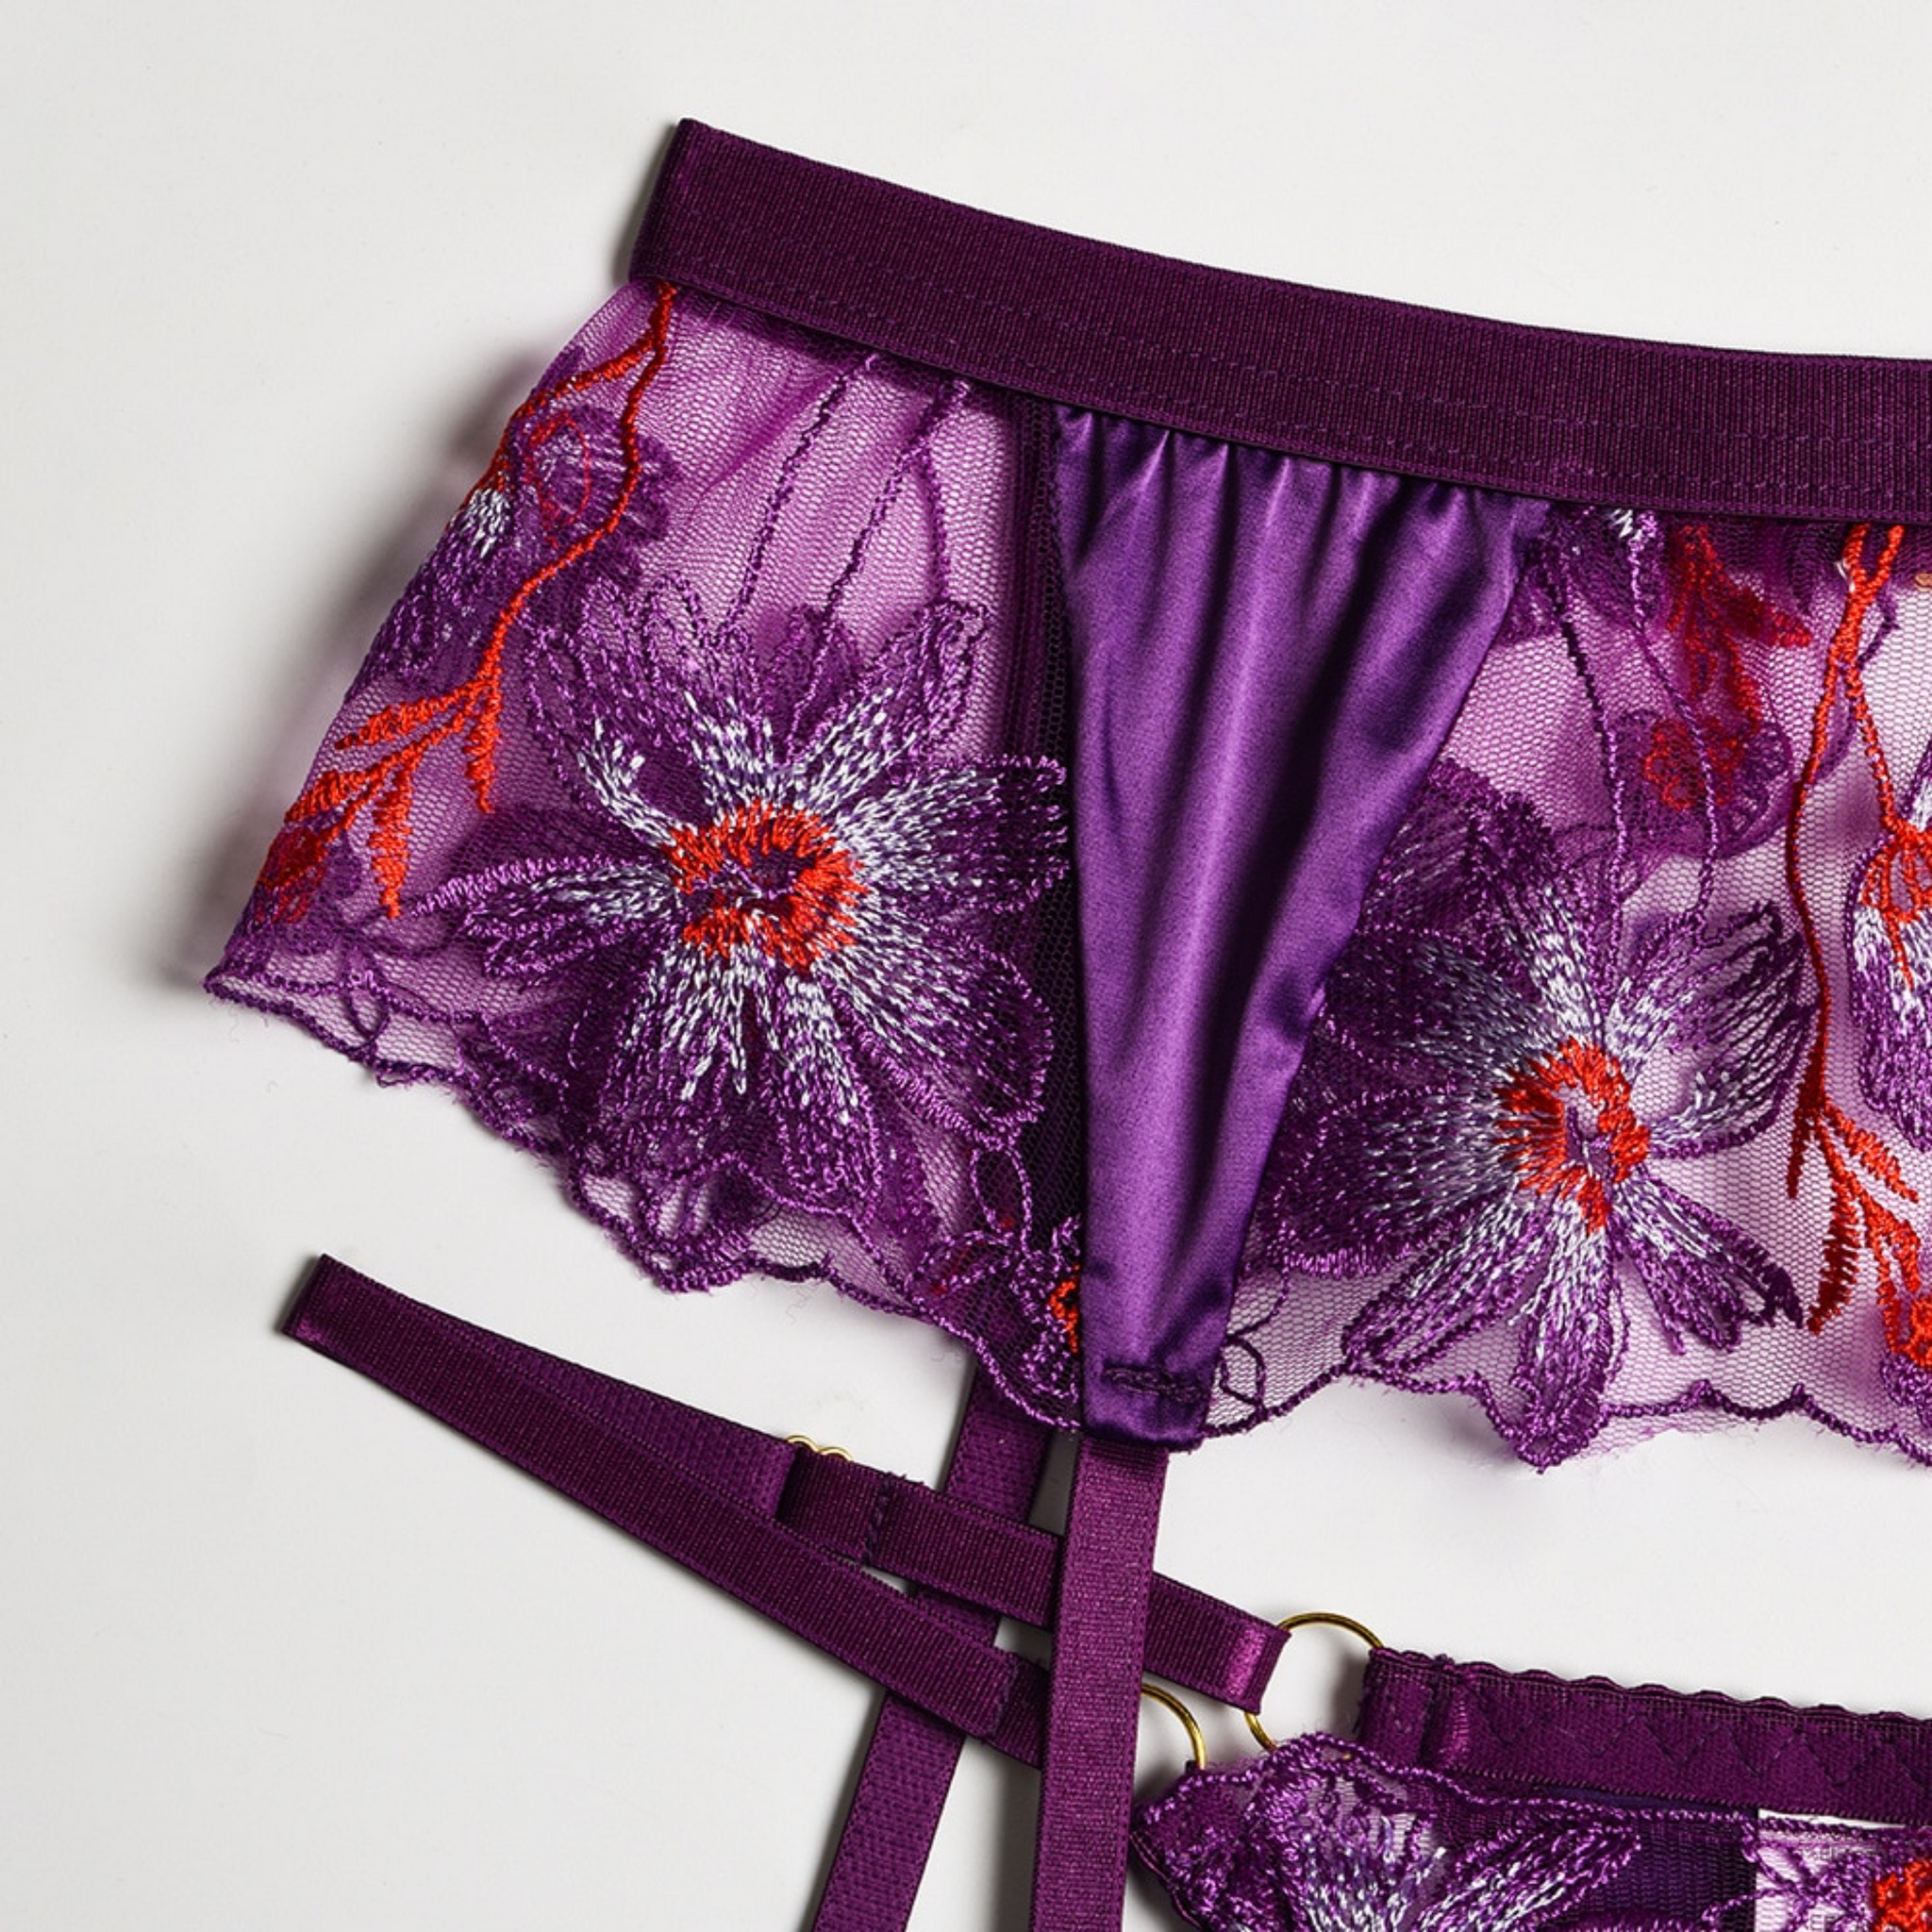 Varssarette, Intimates & Sleepwear, Vassarette Sexy Mesh Lace Cup  Underwired Purple Bra Size 38c